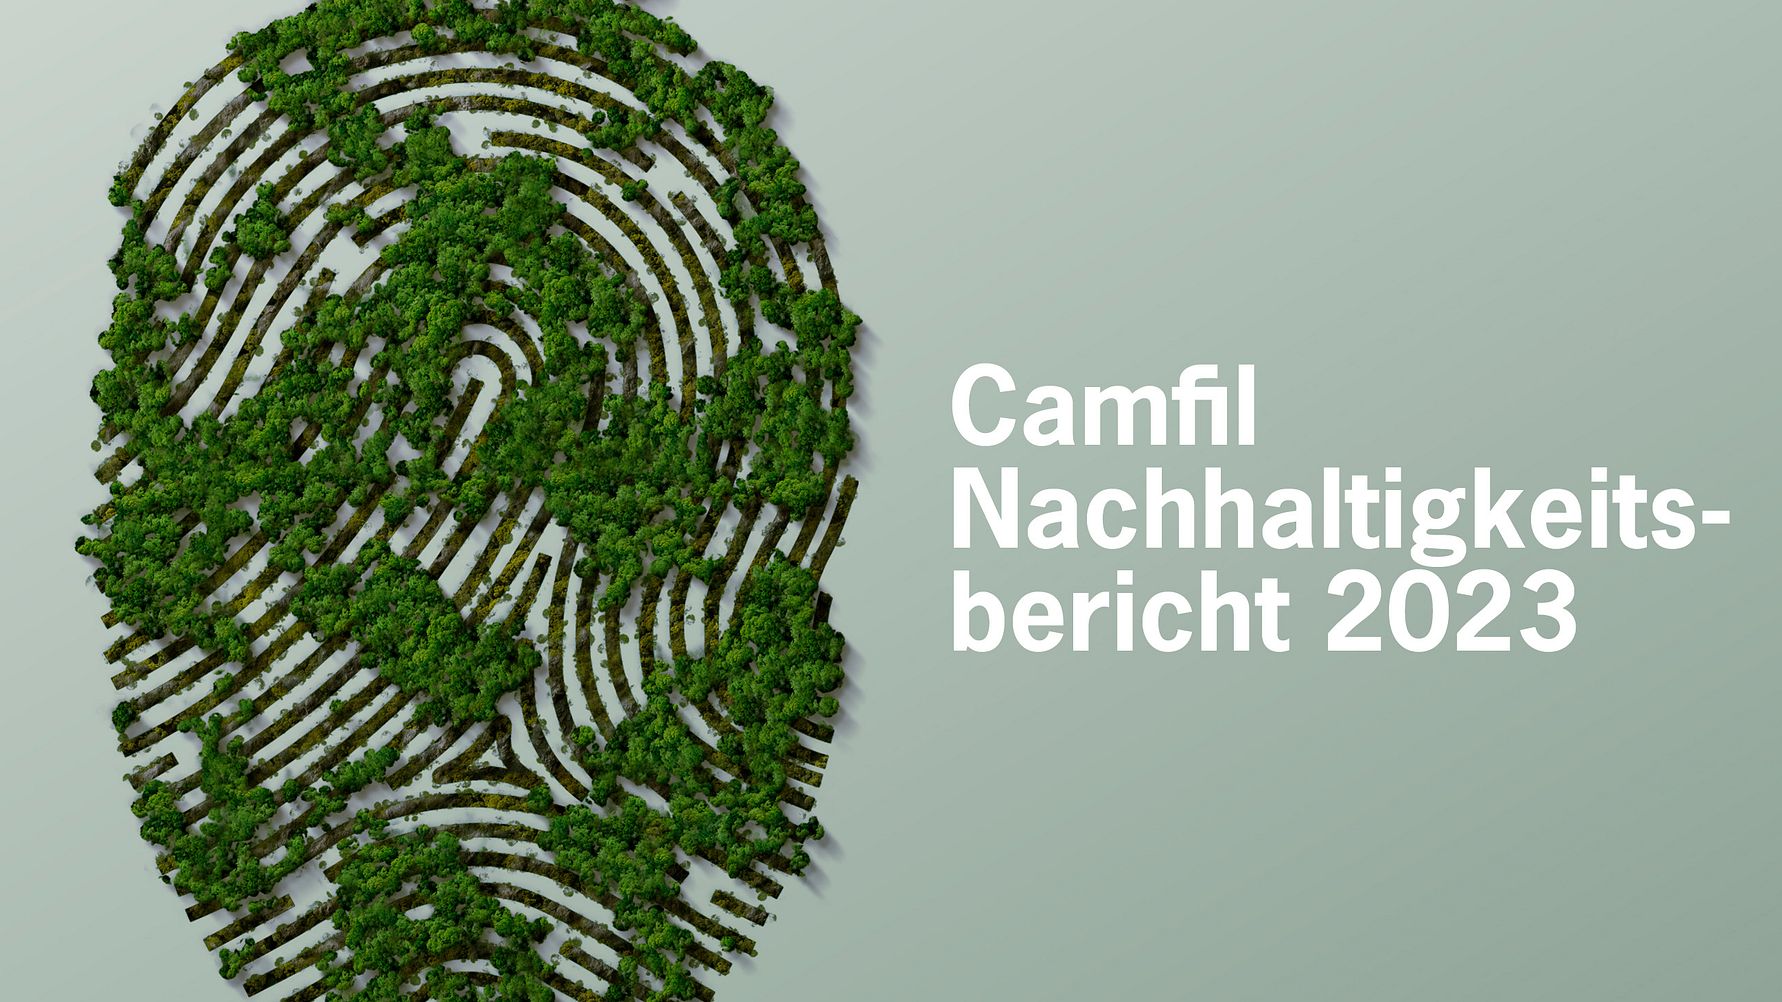 Camfil veröffentlicht Nachhaltigkeitsbericht 2023